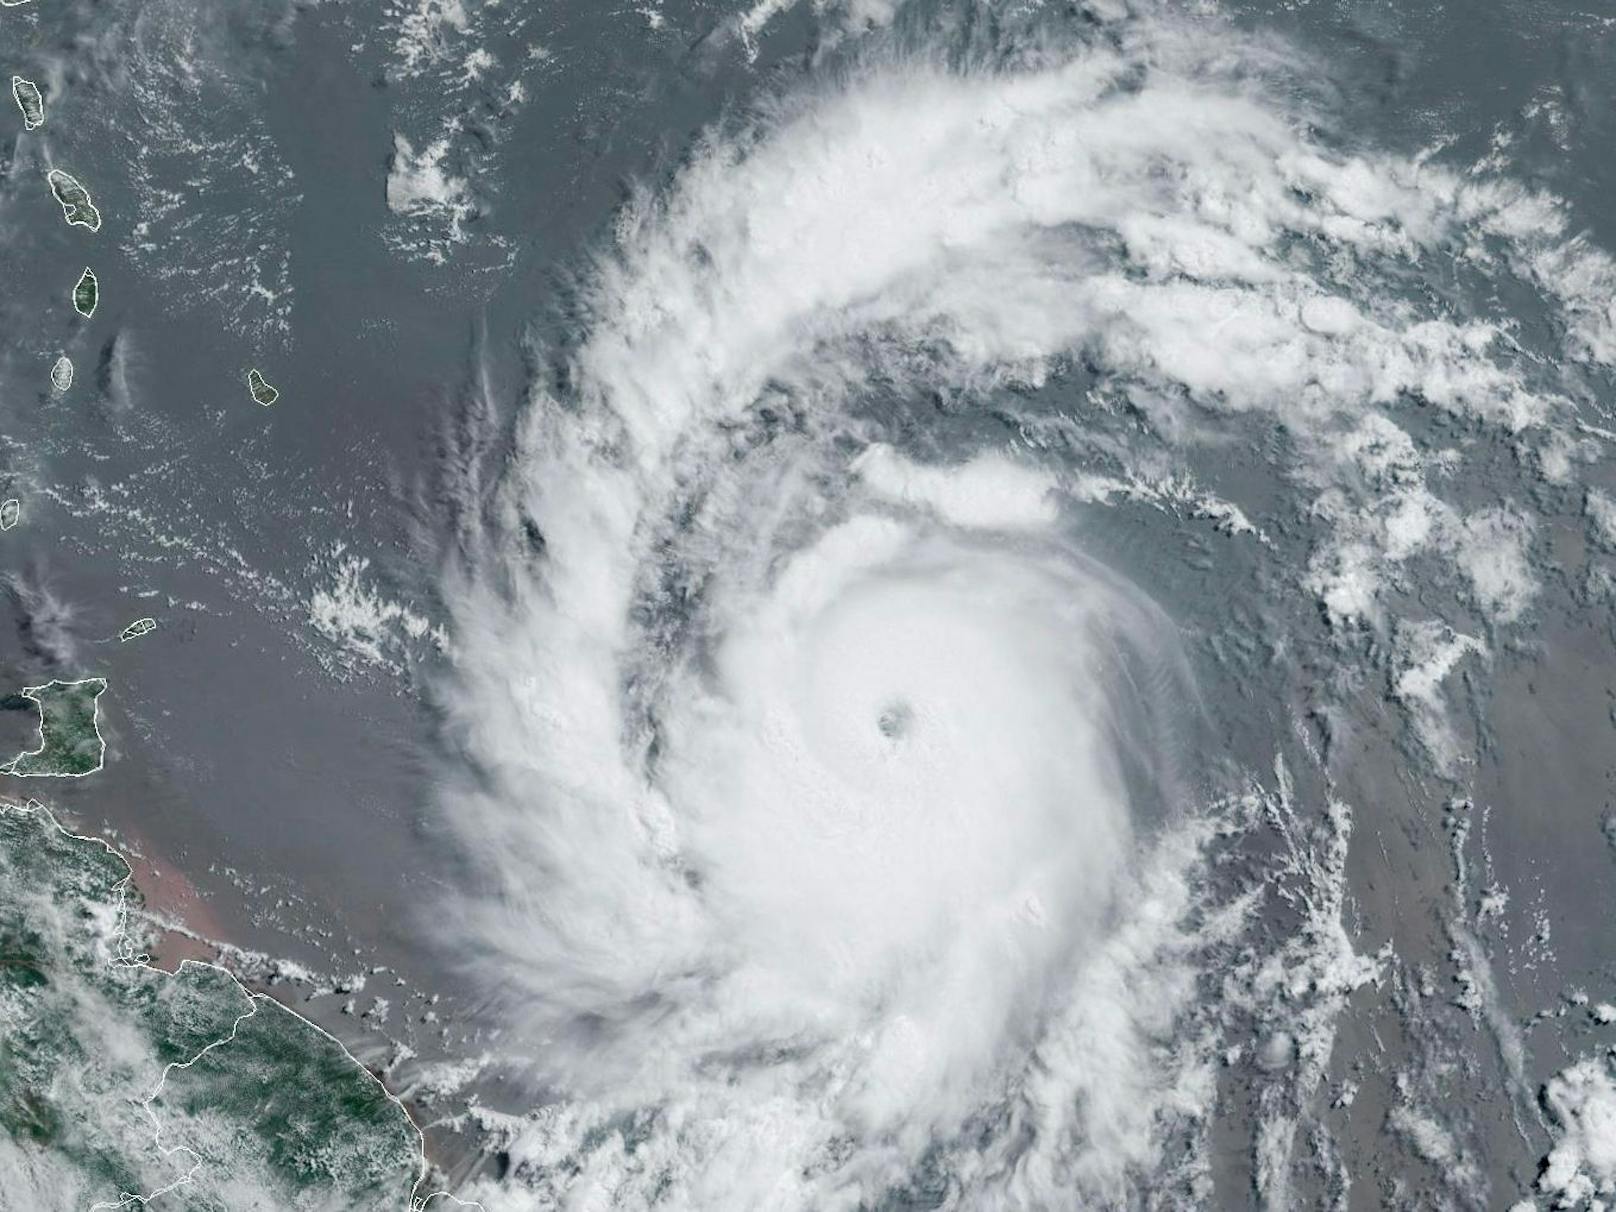 Hurrikan Beryl erreicht in der Karibik Kategorie 5